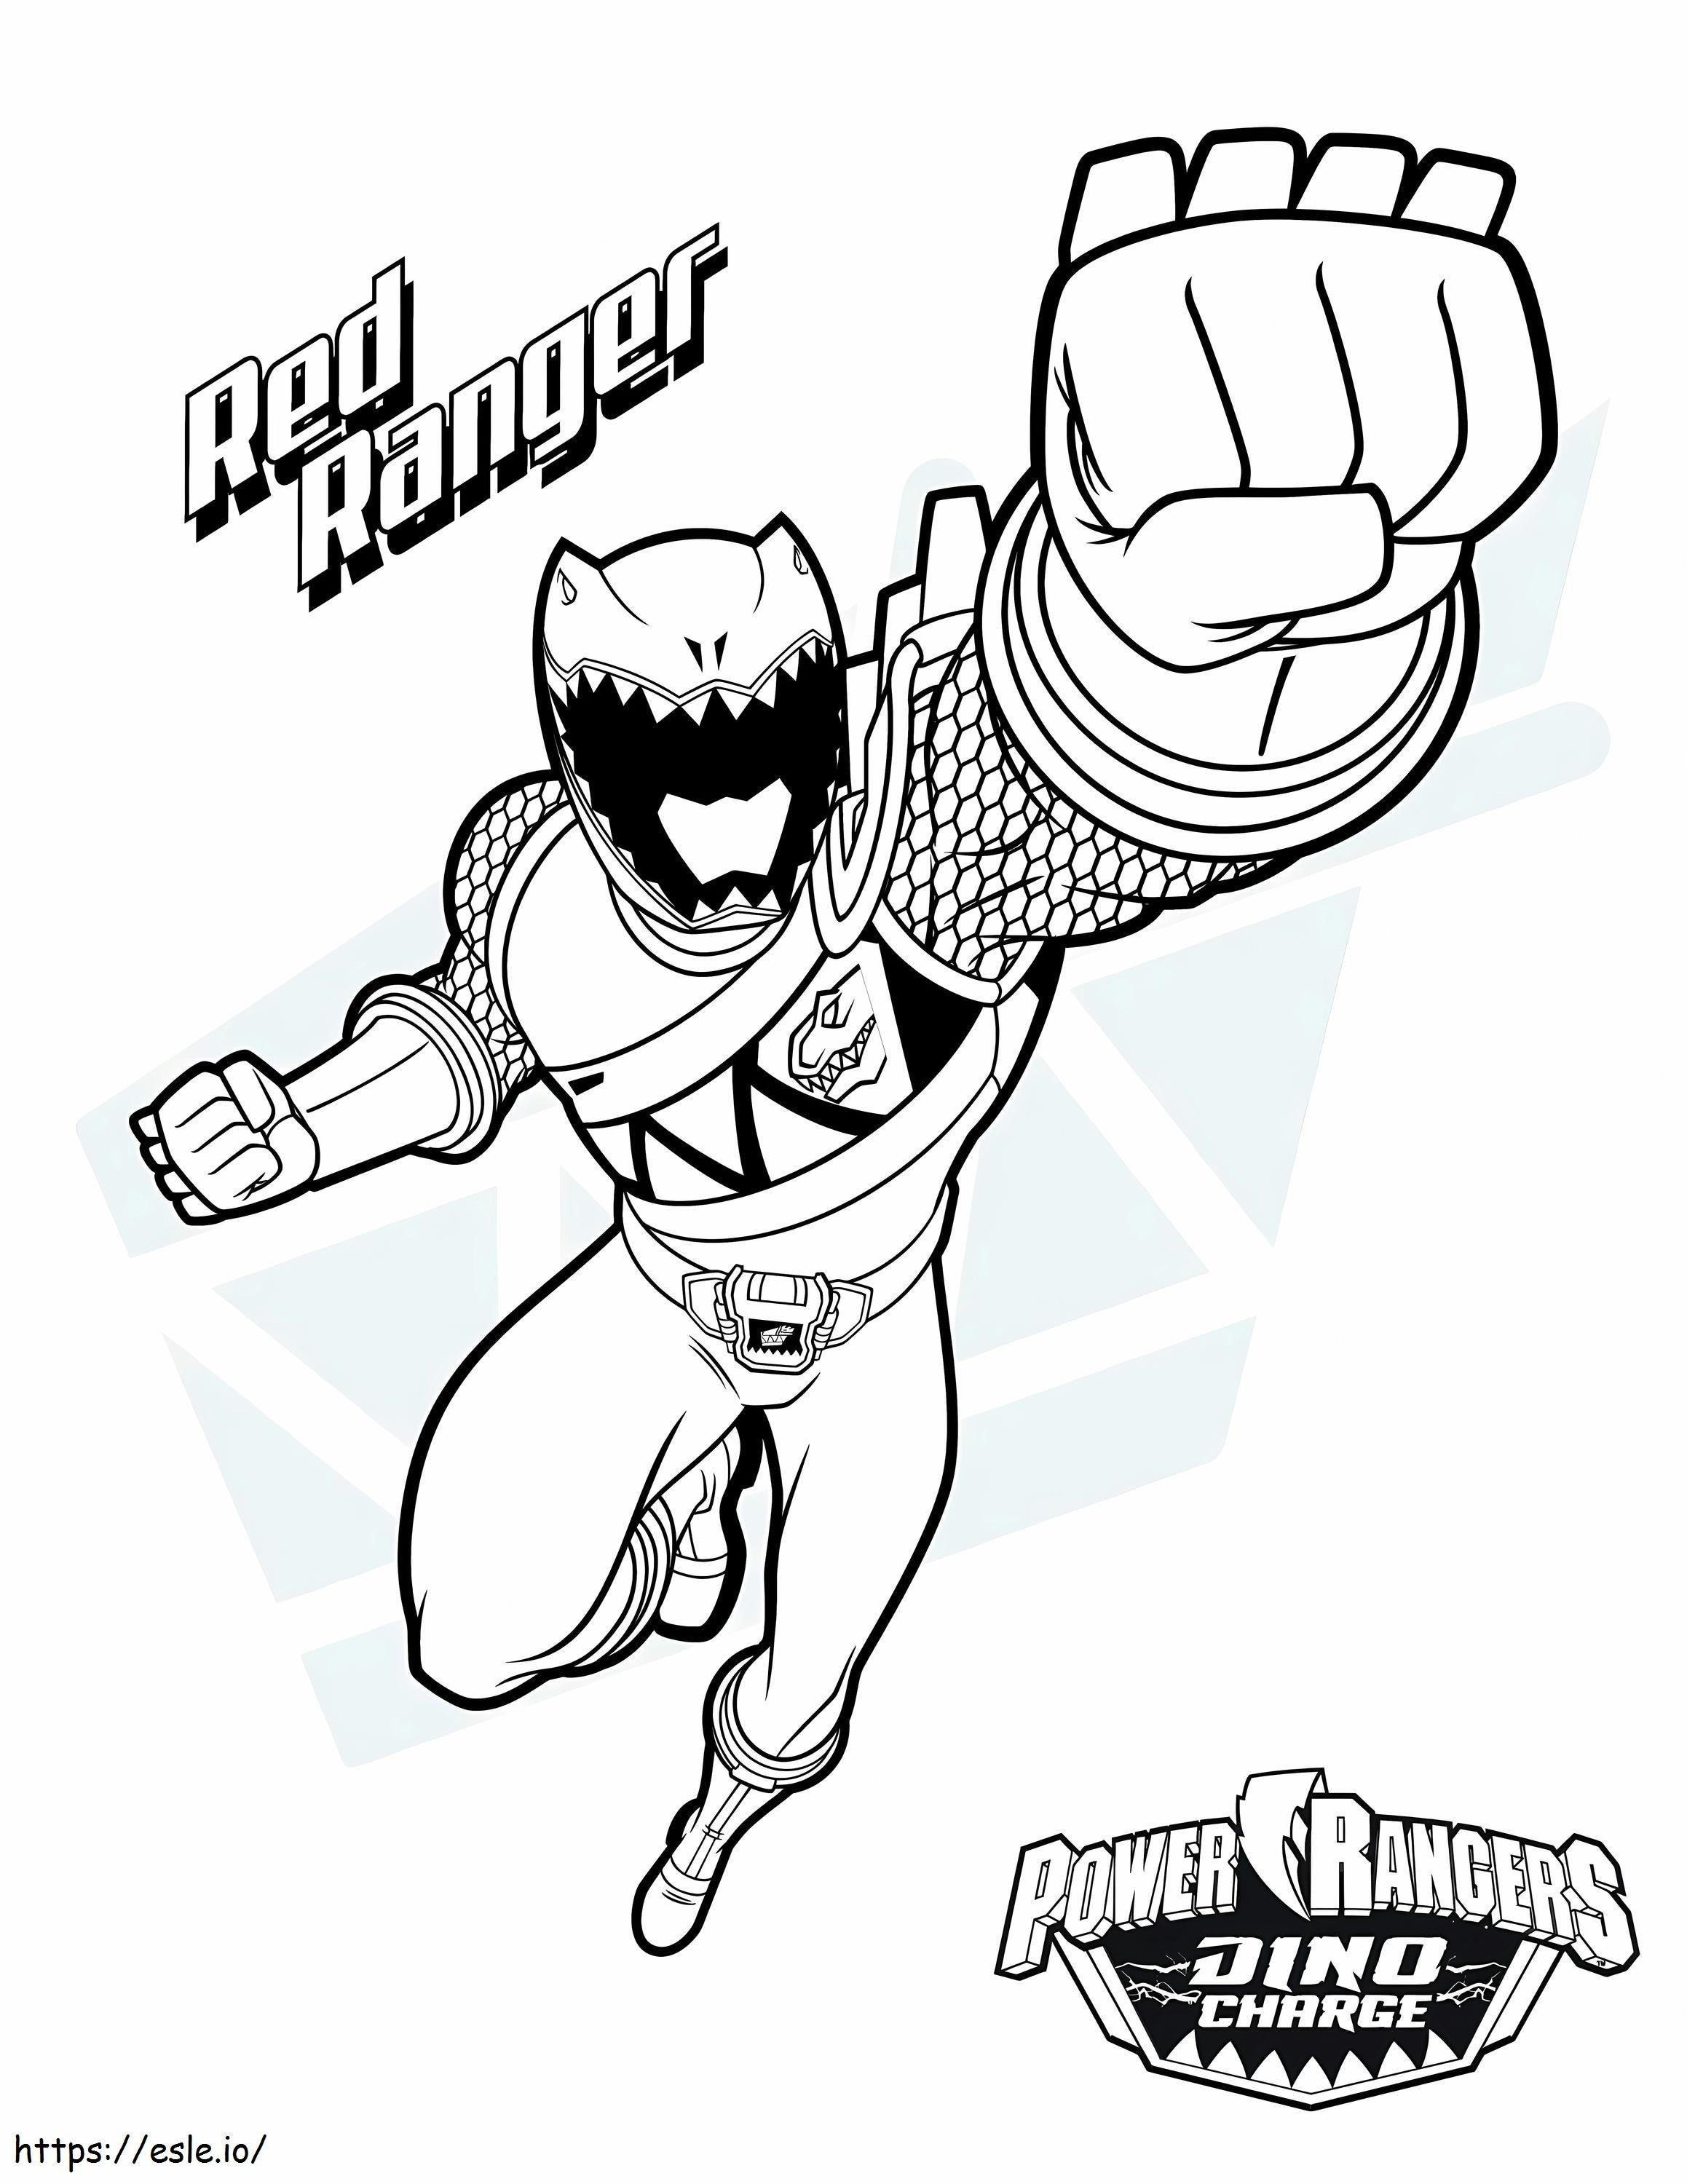  Power Ranger Buku Mewarnai Segar Perkasa Morphin Power Rangers Power Ranger Dxj1T Gambar Mewarnai